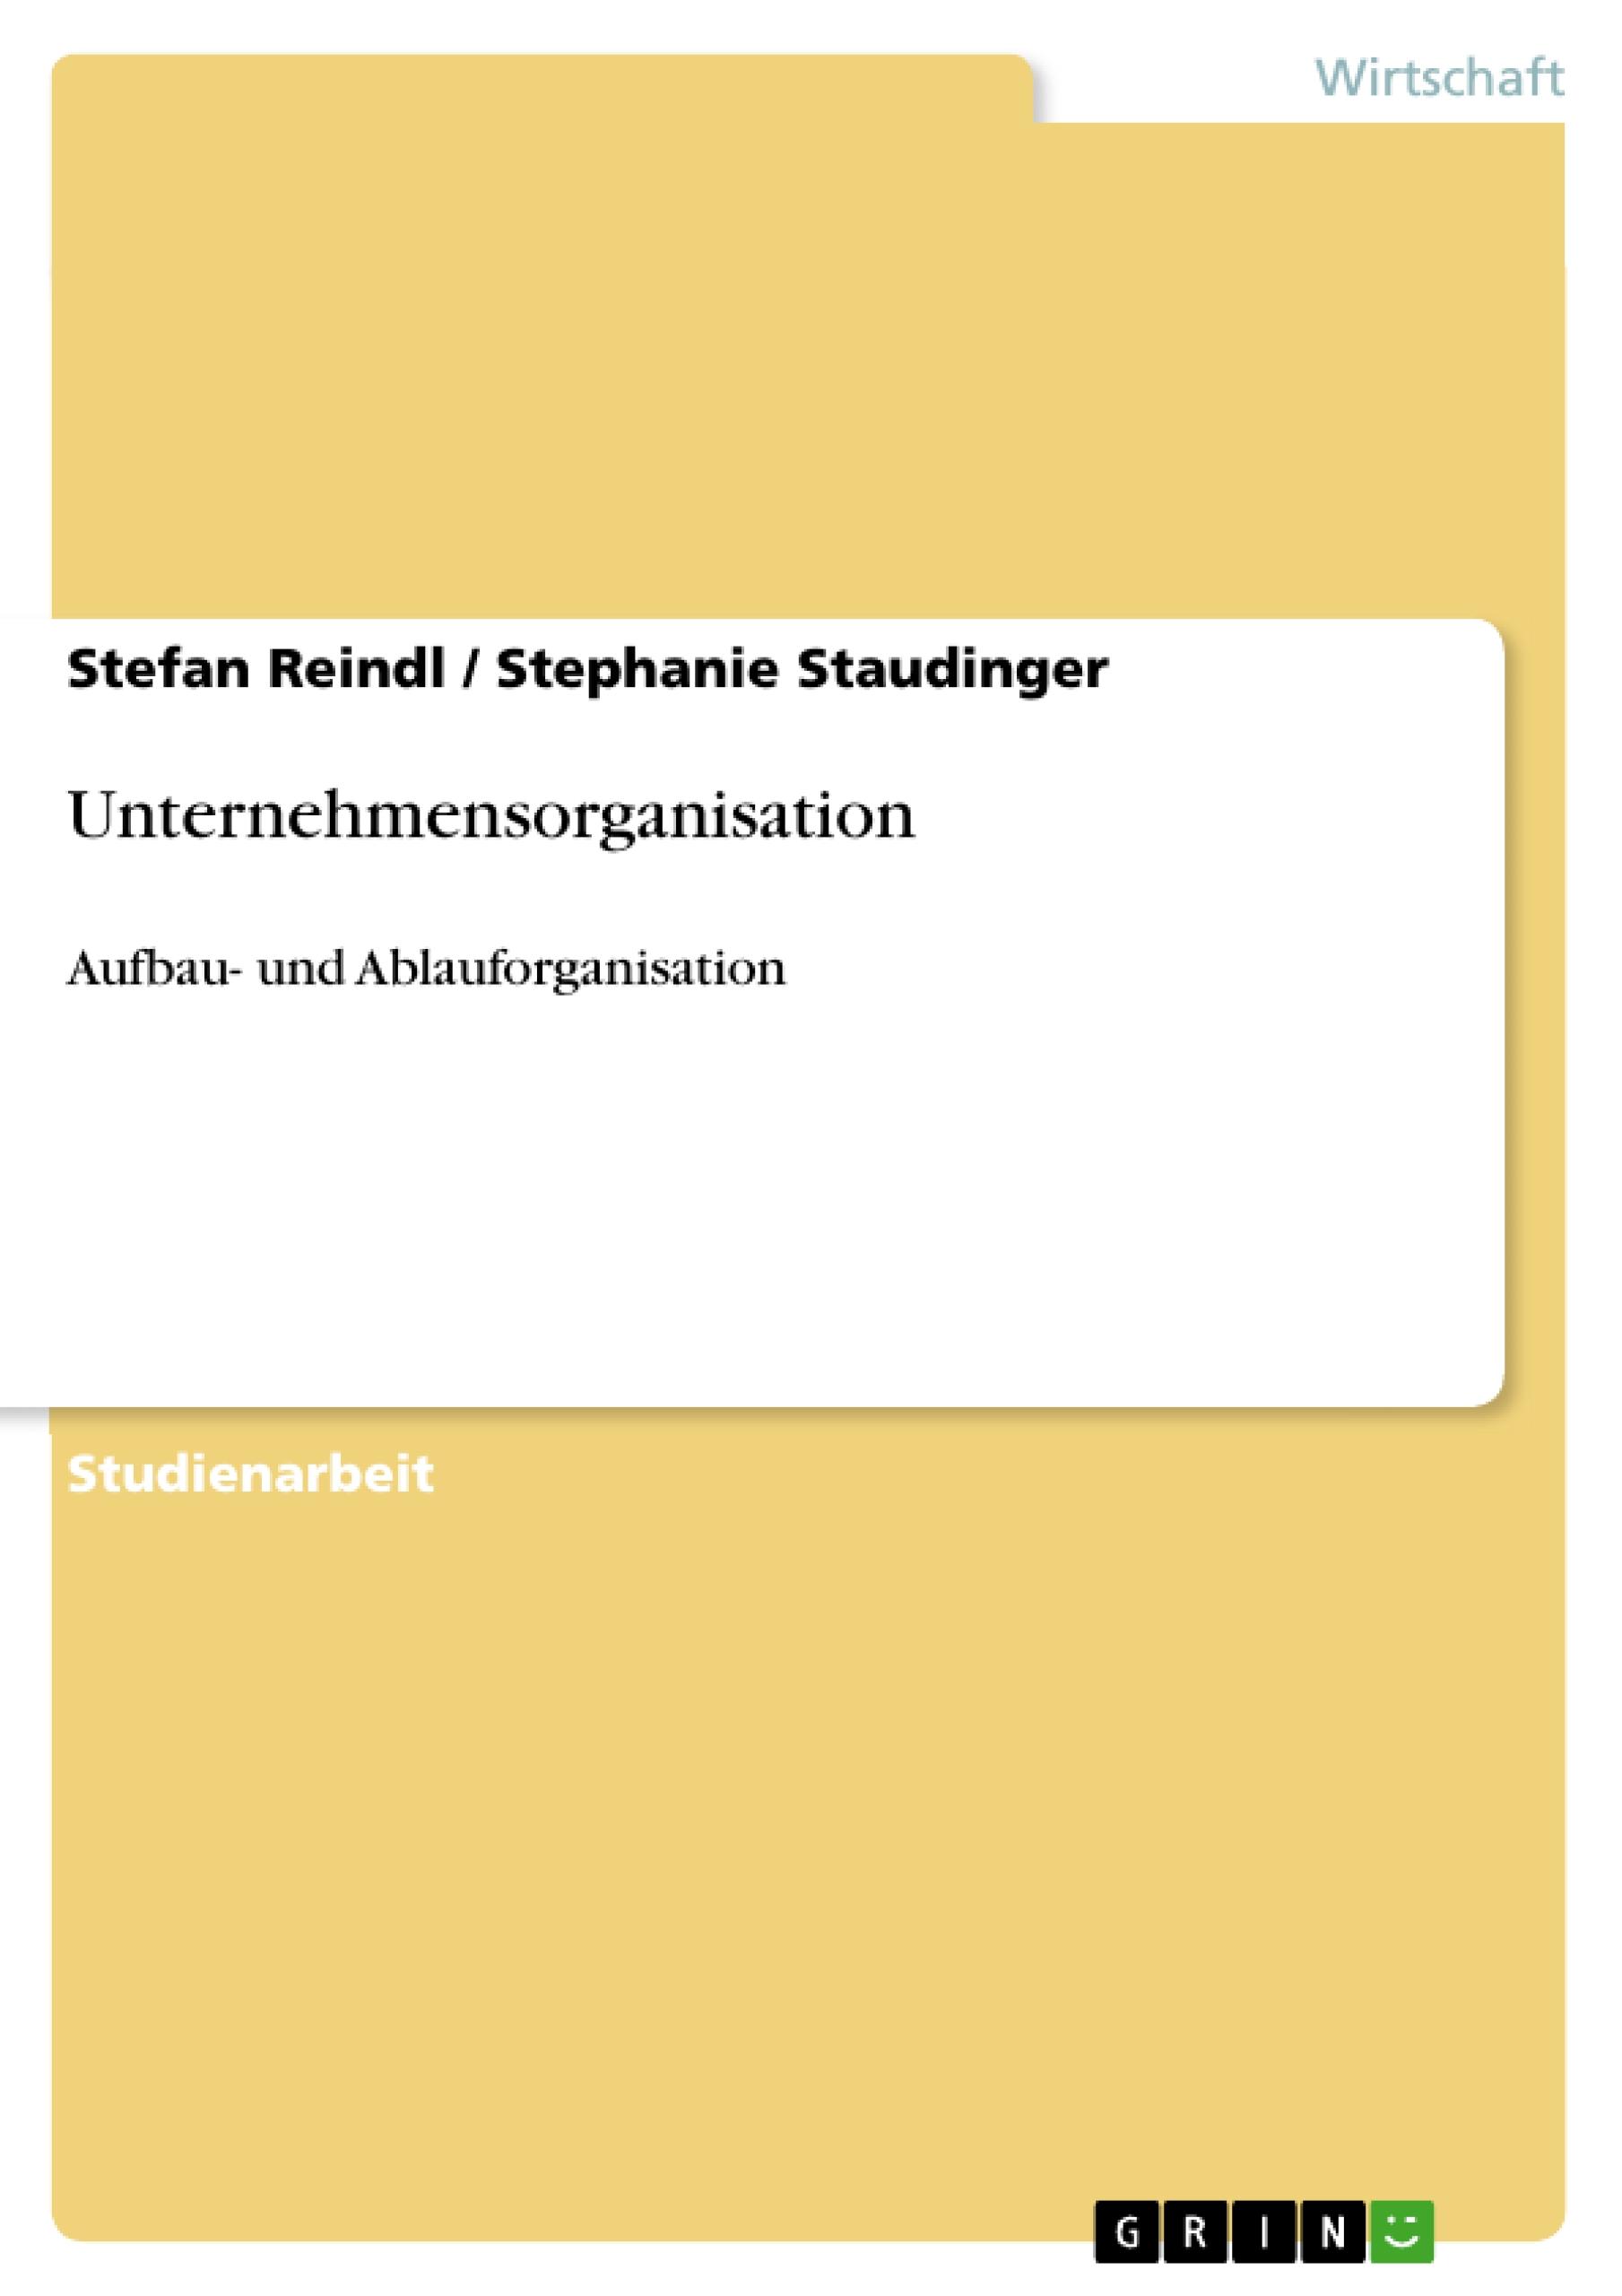 Unternehmensorganisation - Staudinger, Stephanie|Reindl, Stefan